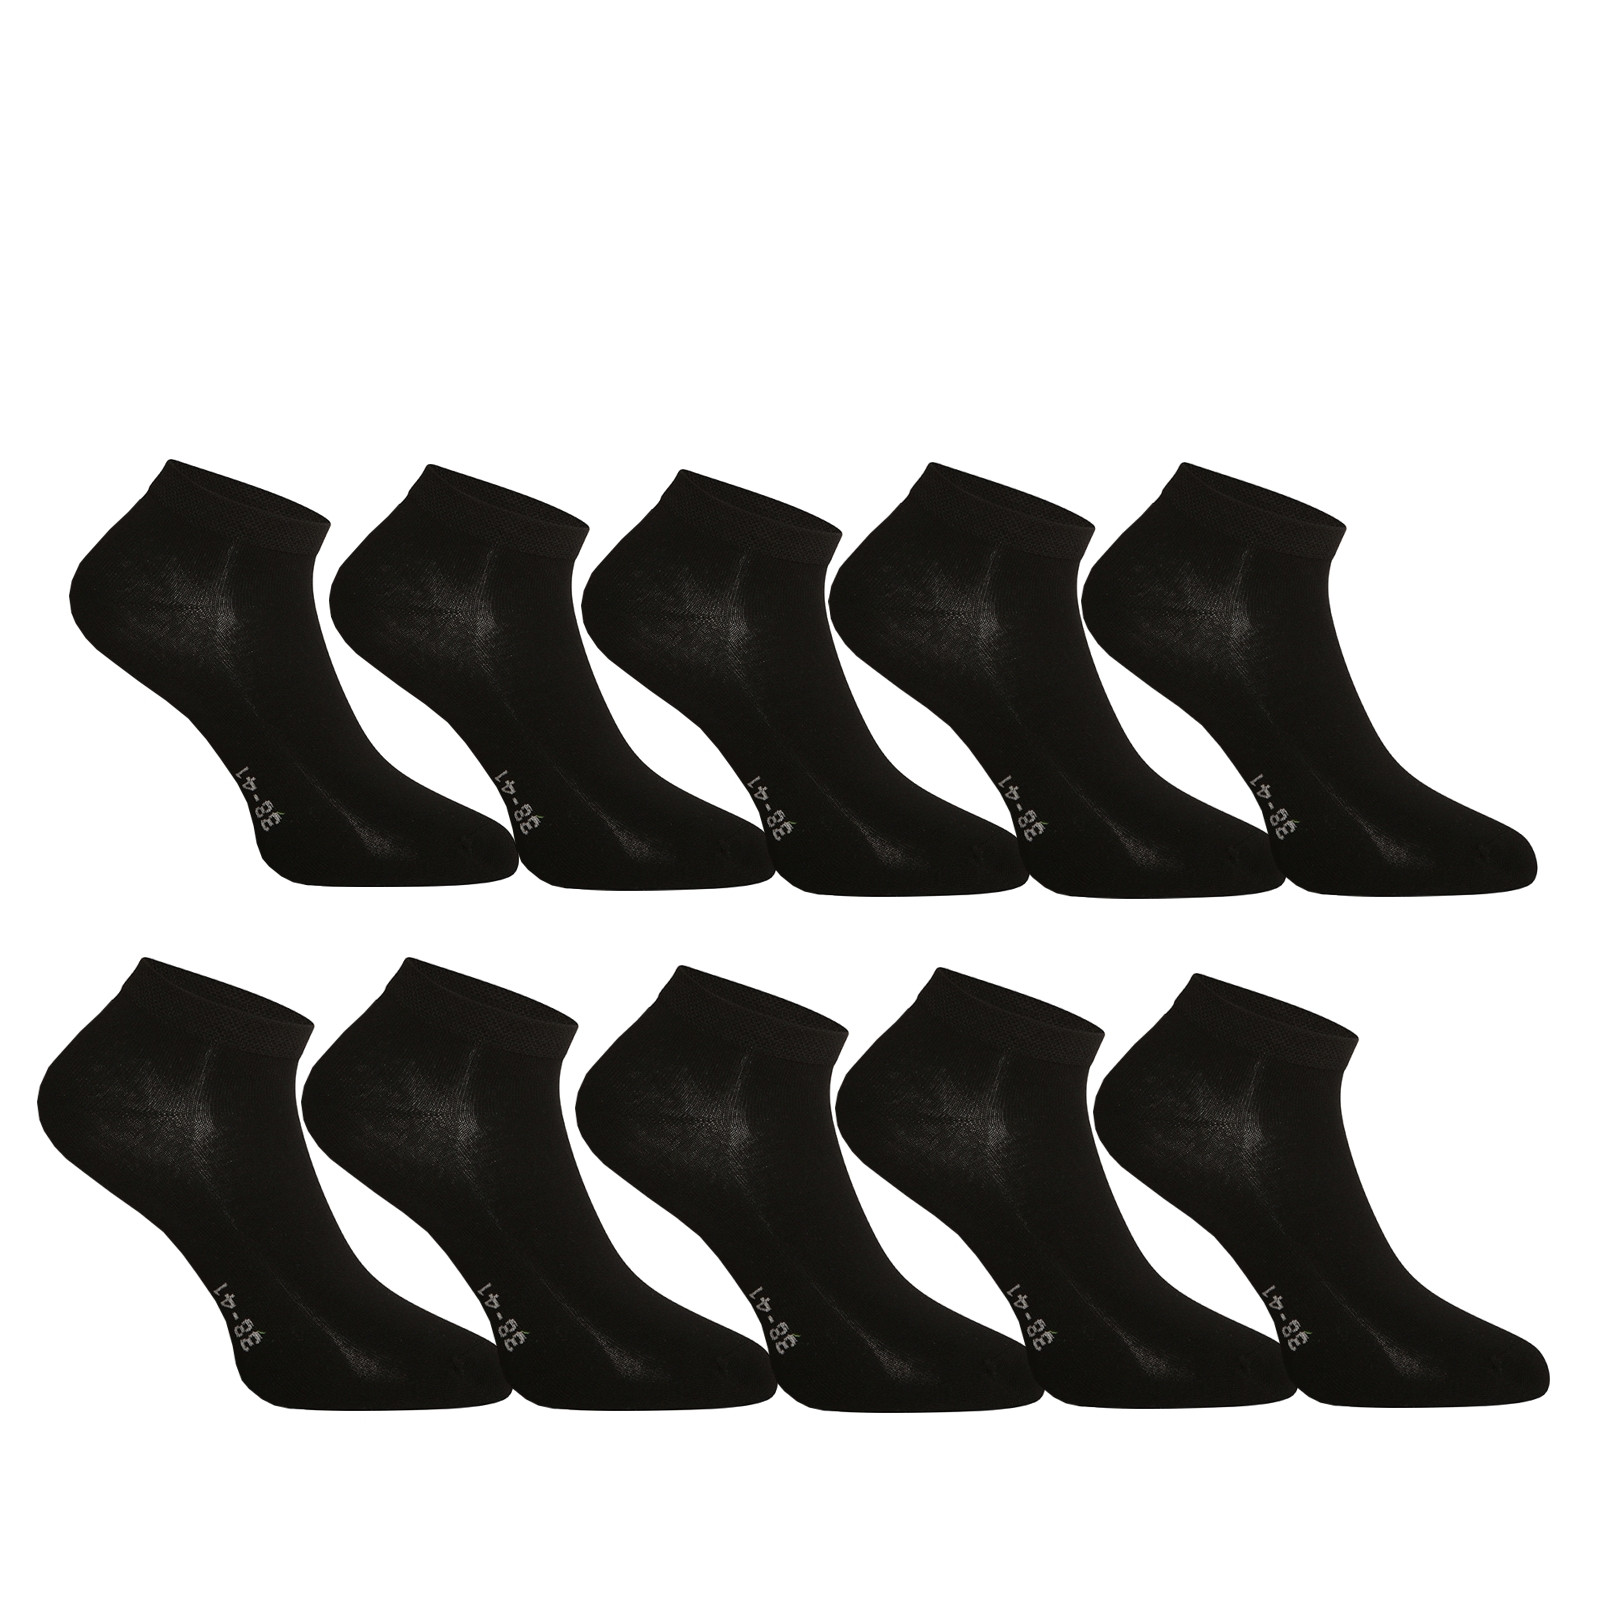 10PACK socks Gino bamboo black